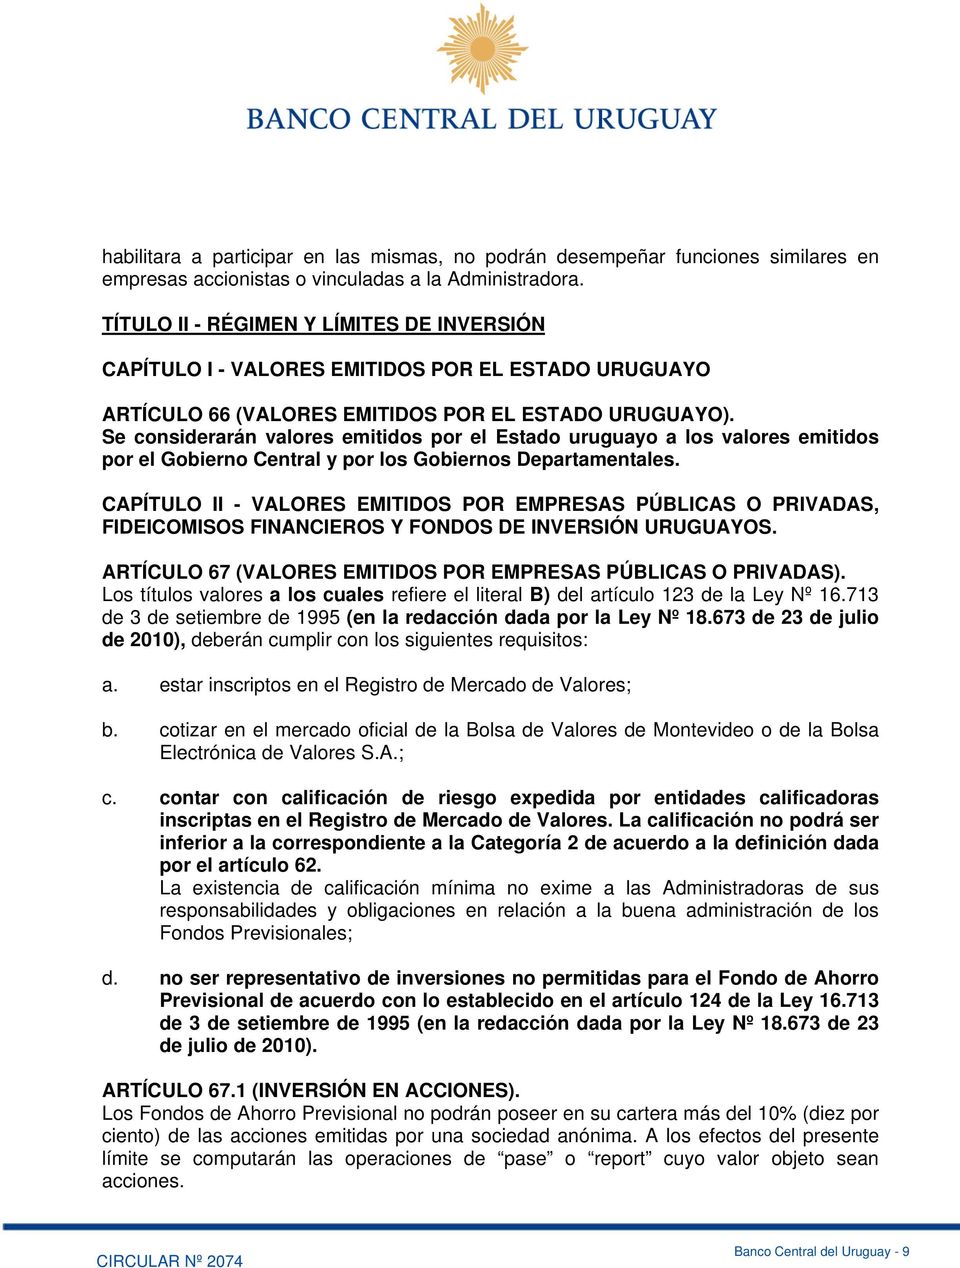 Se considerarán valores emitidos por el Estado uruguayo a los valores emitidos por el Gobierno Central y por los Gobiernos Departamentales.